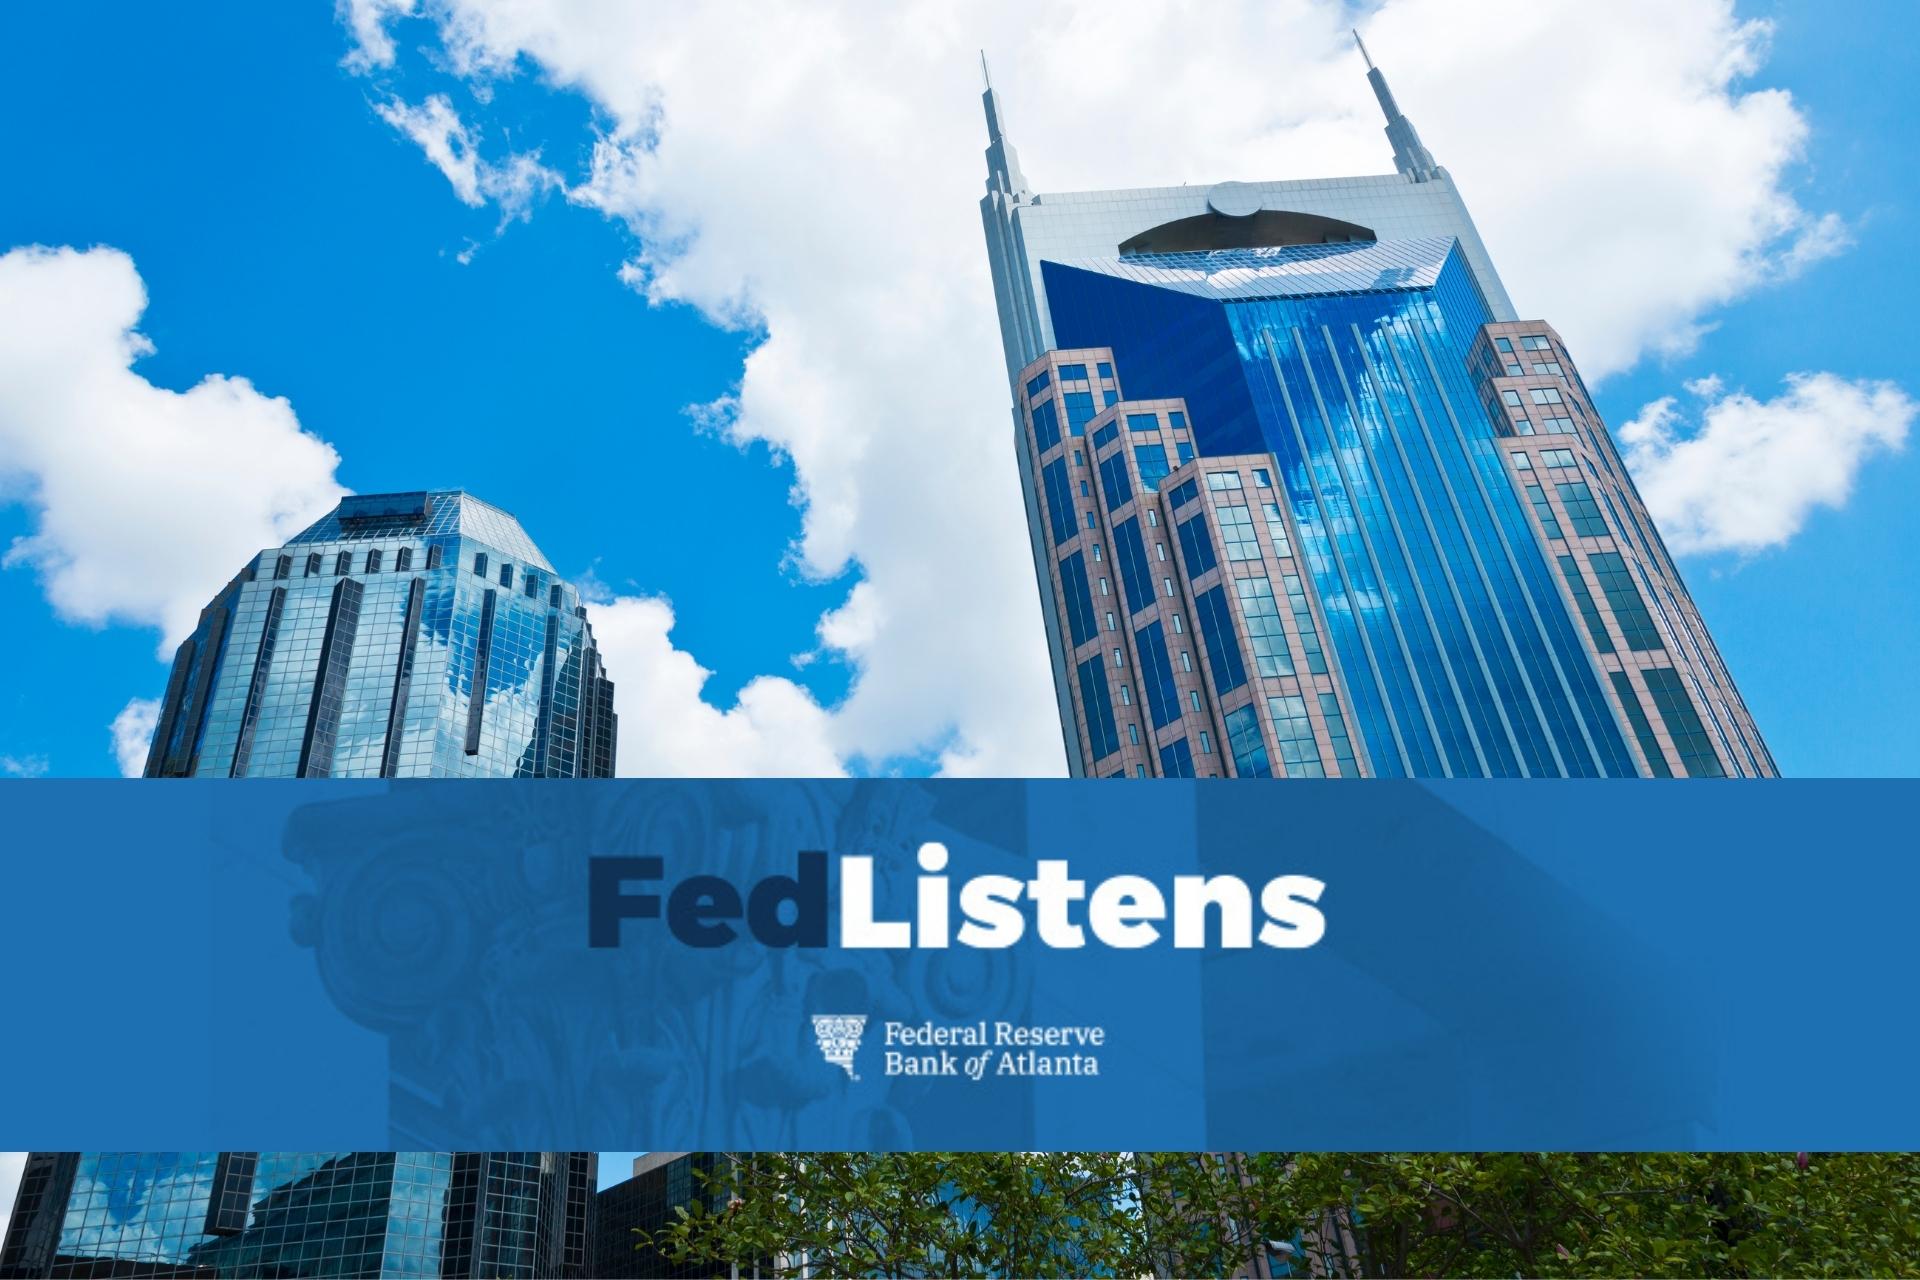 Fed Listens Nashville